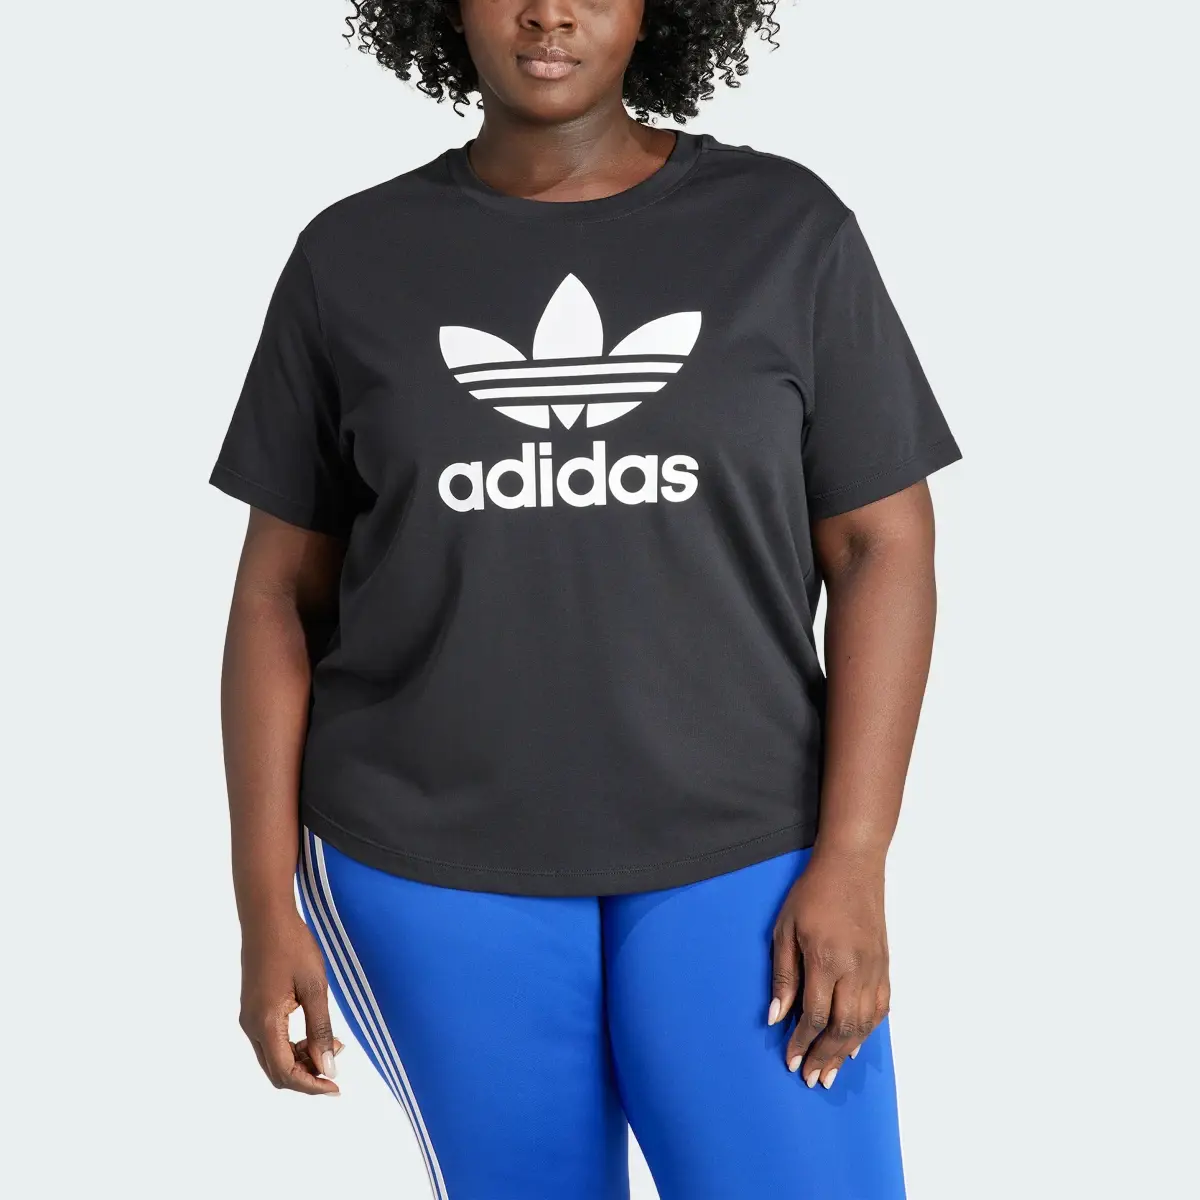 Adidas T-shirt Quadrada Trefoil Adicolor (Plus Size). 1